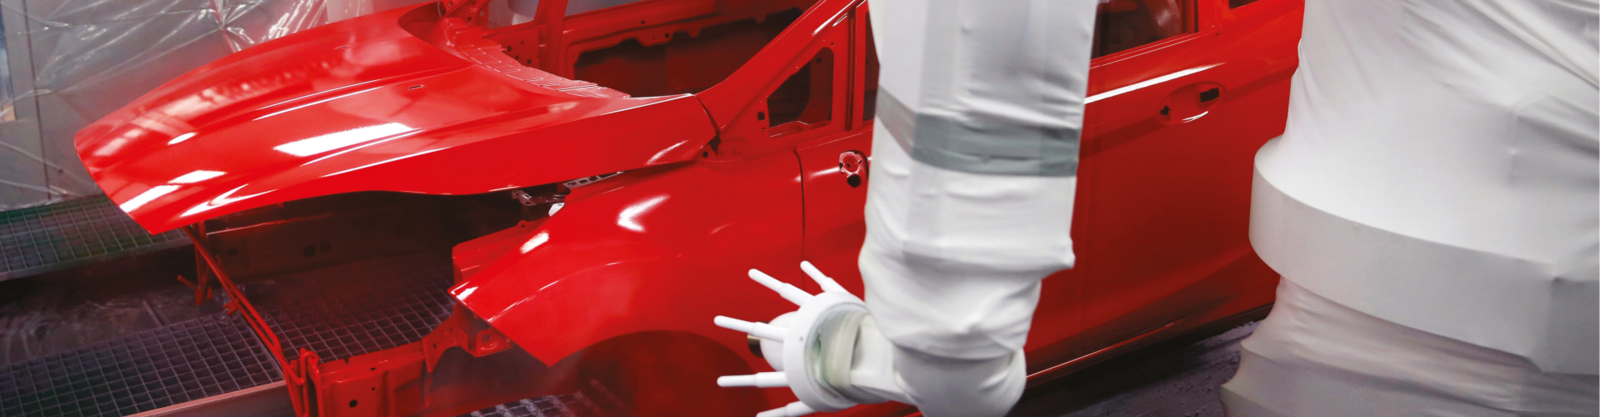 En högglansig rödfärgad bilkaross står i ett vitklätt rum 